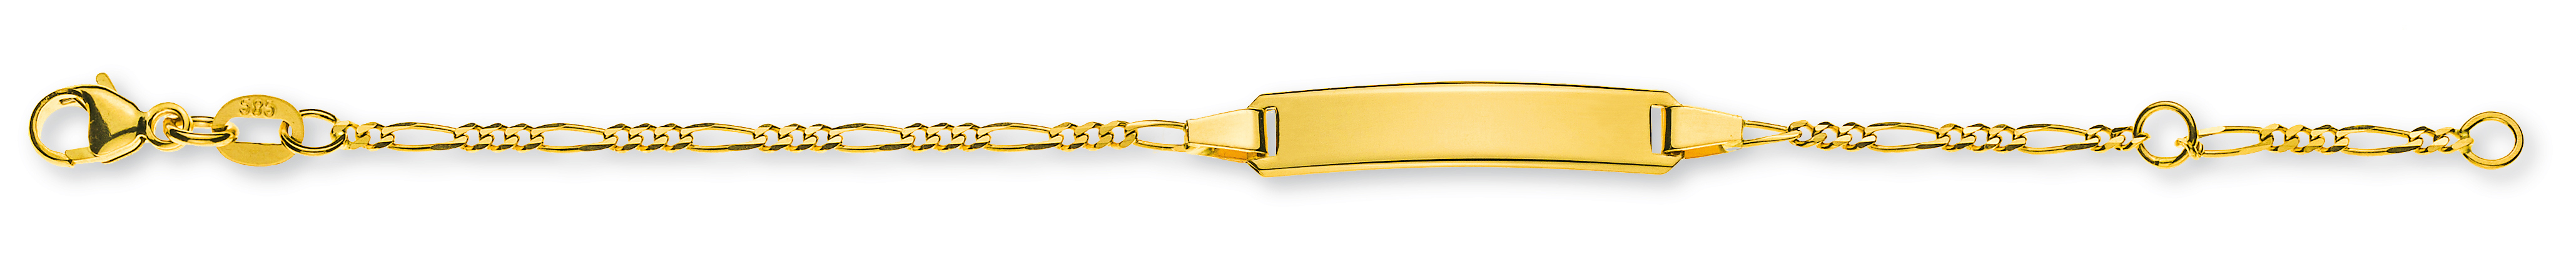 AURONOS Élégance ID-Bracelet or jaune 14k chaîne figaro 16cm